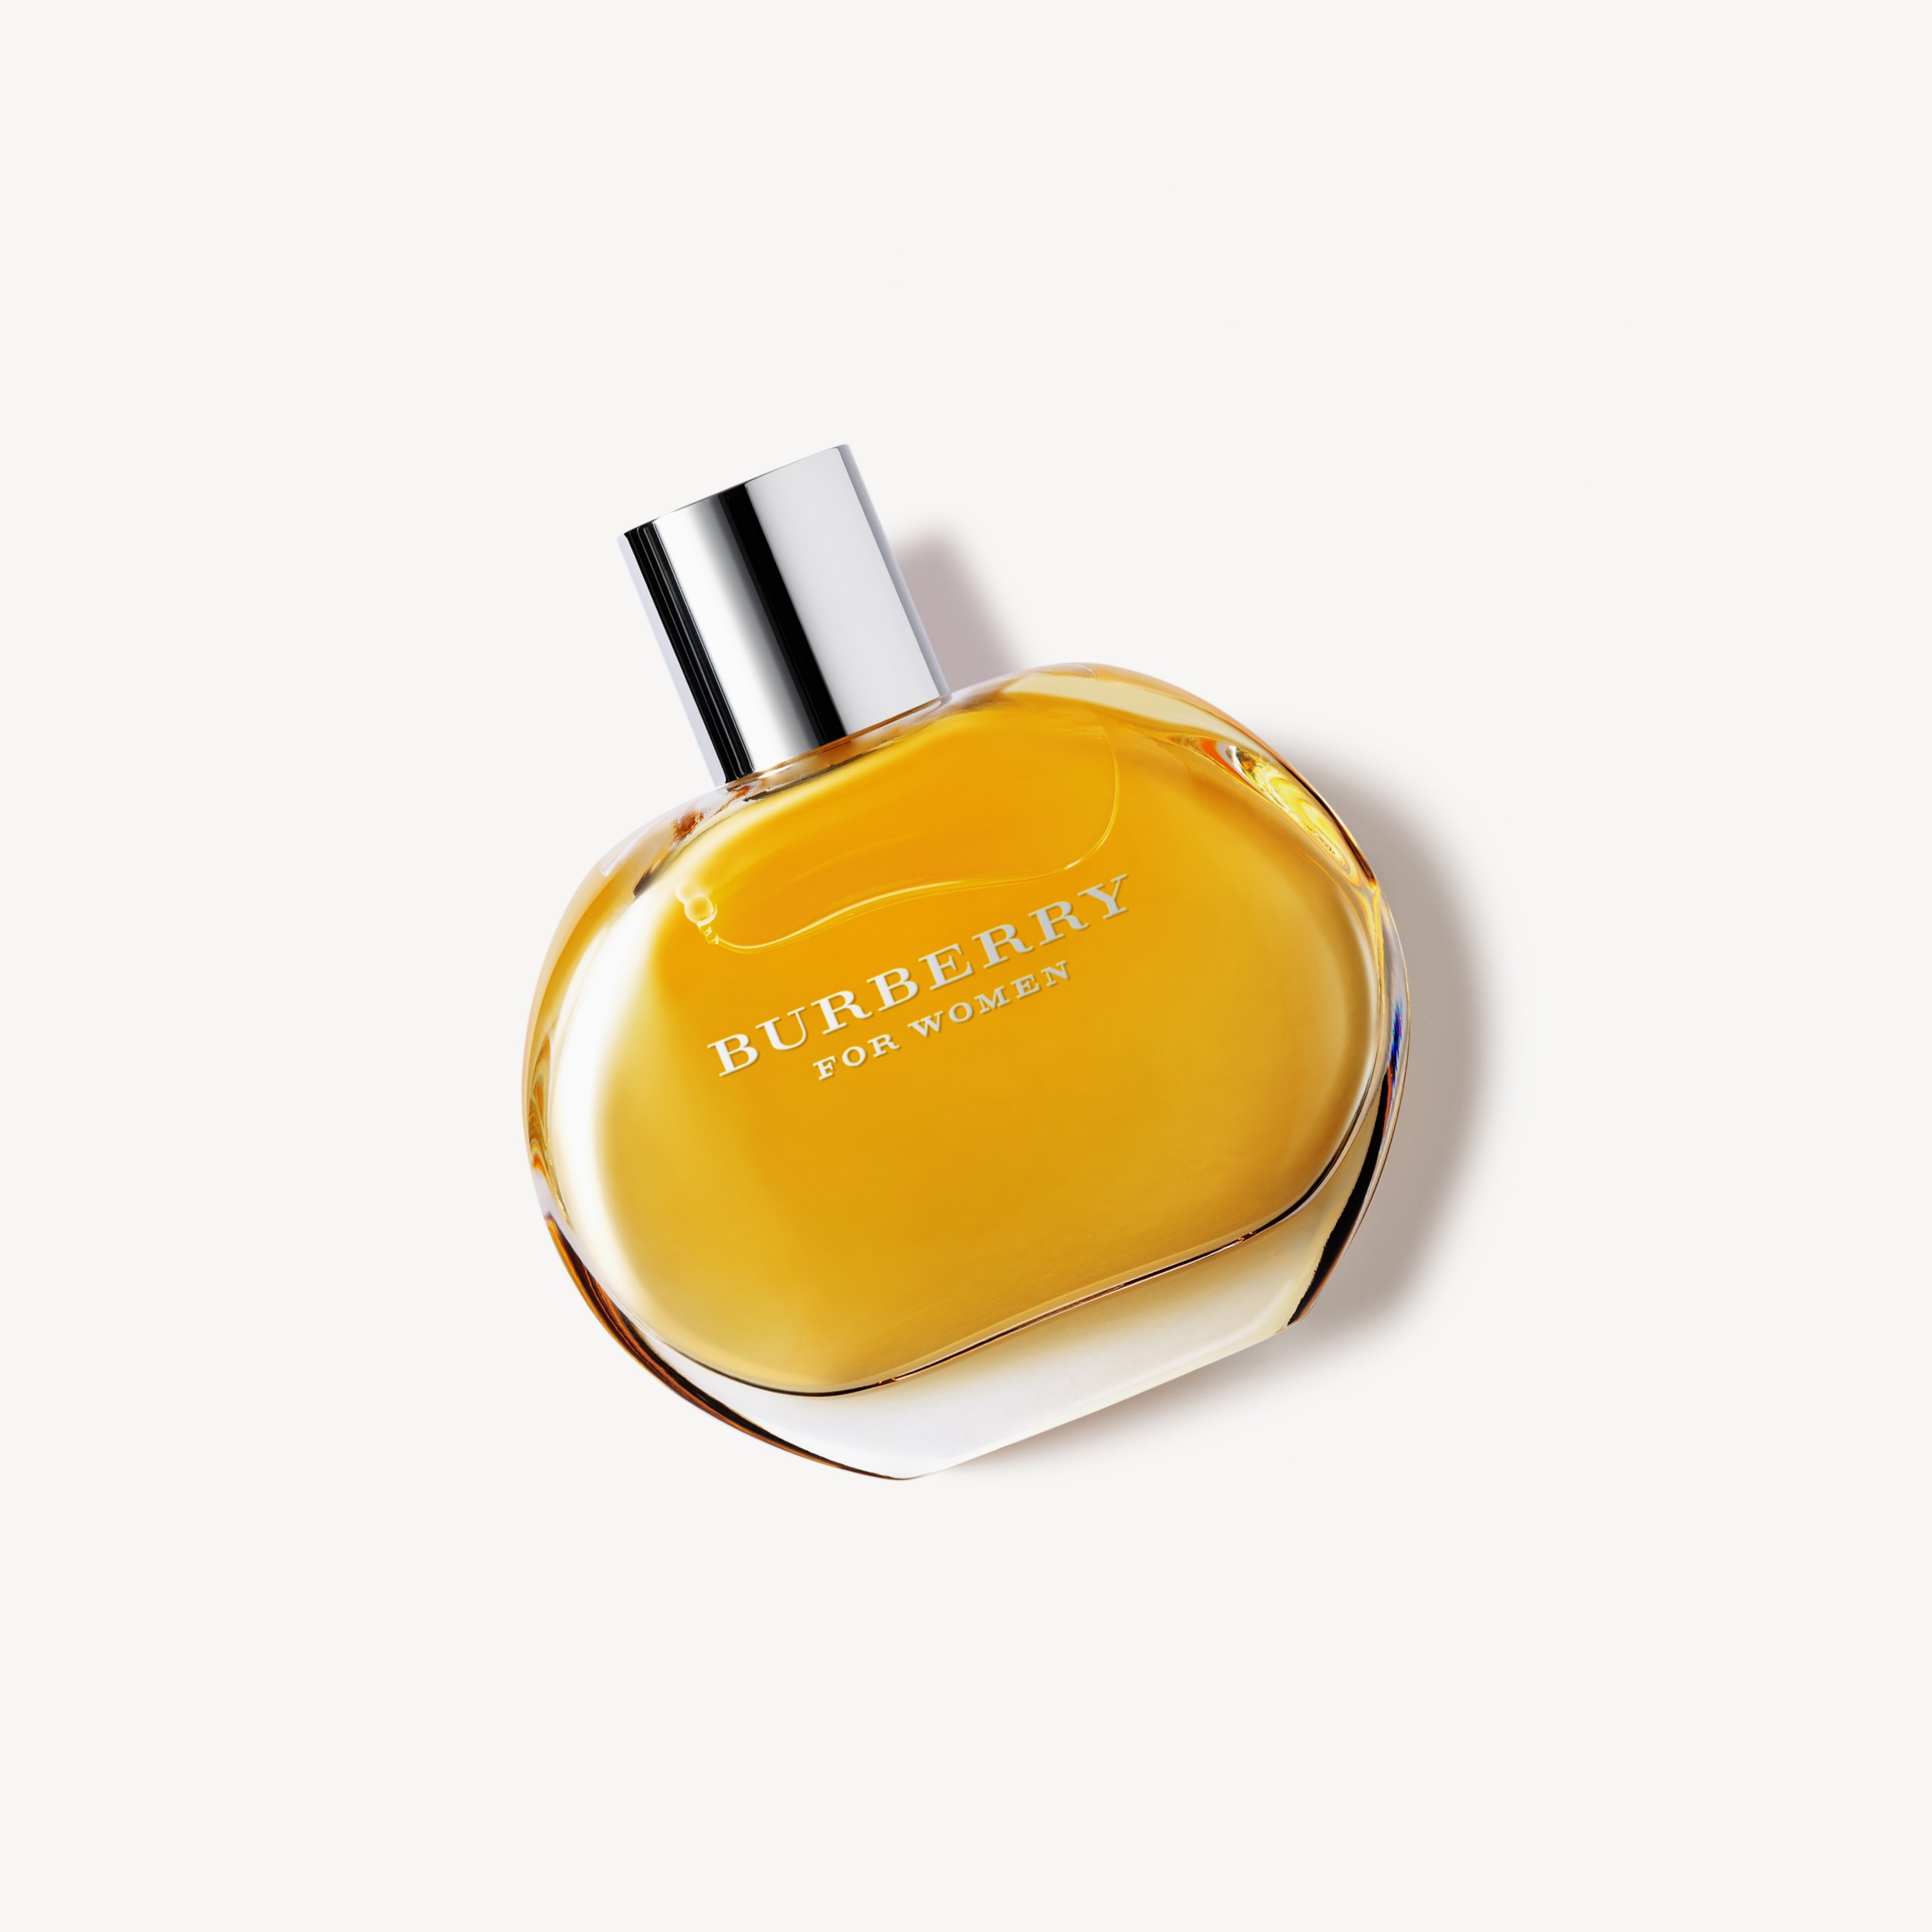 Burberry Classic For Women Eau De Parfum Review | vlr.eng.br